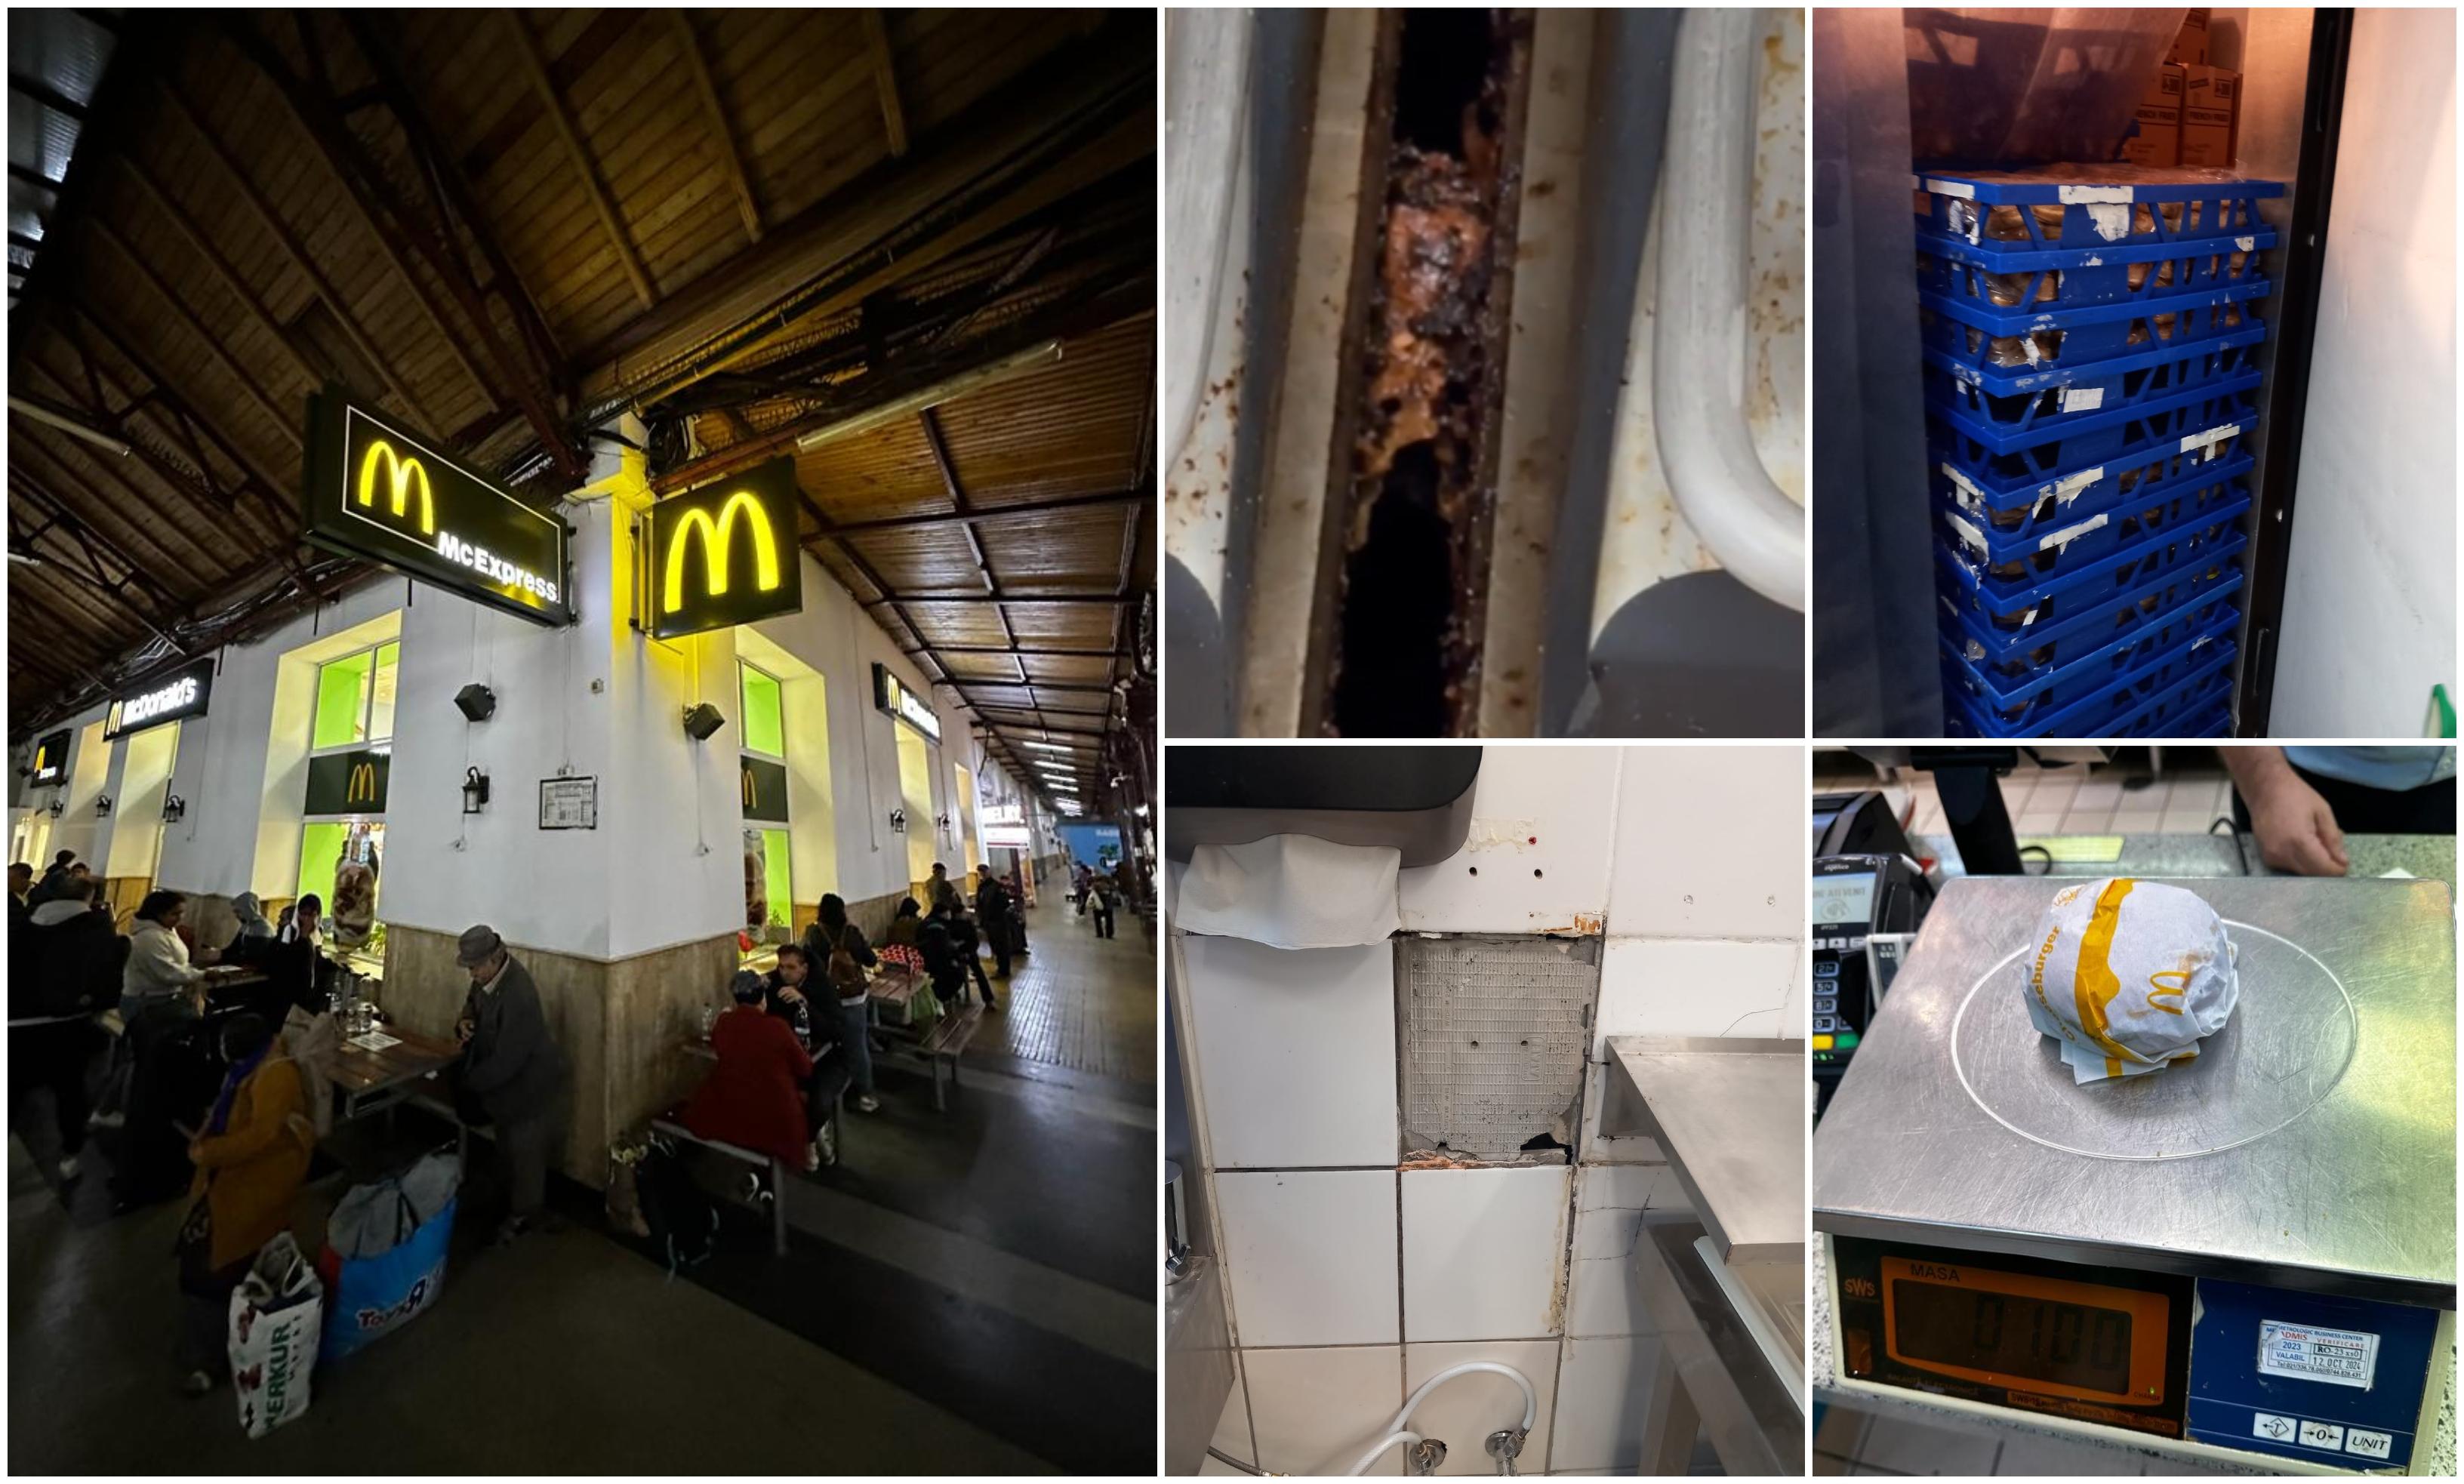 McDonald’s Gara Nord a fost închis temporar